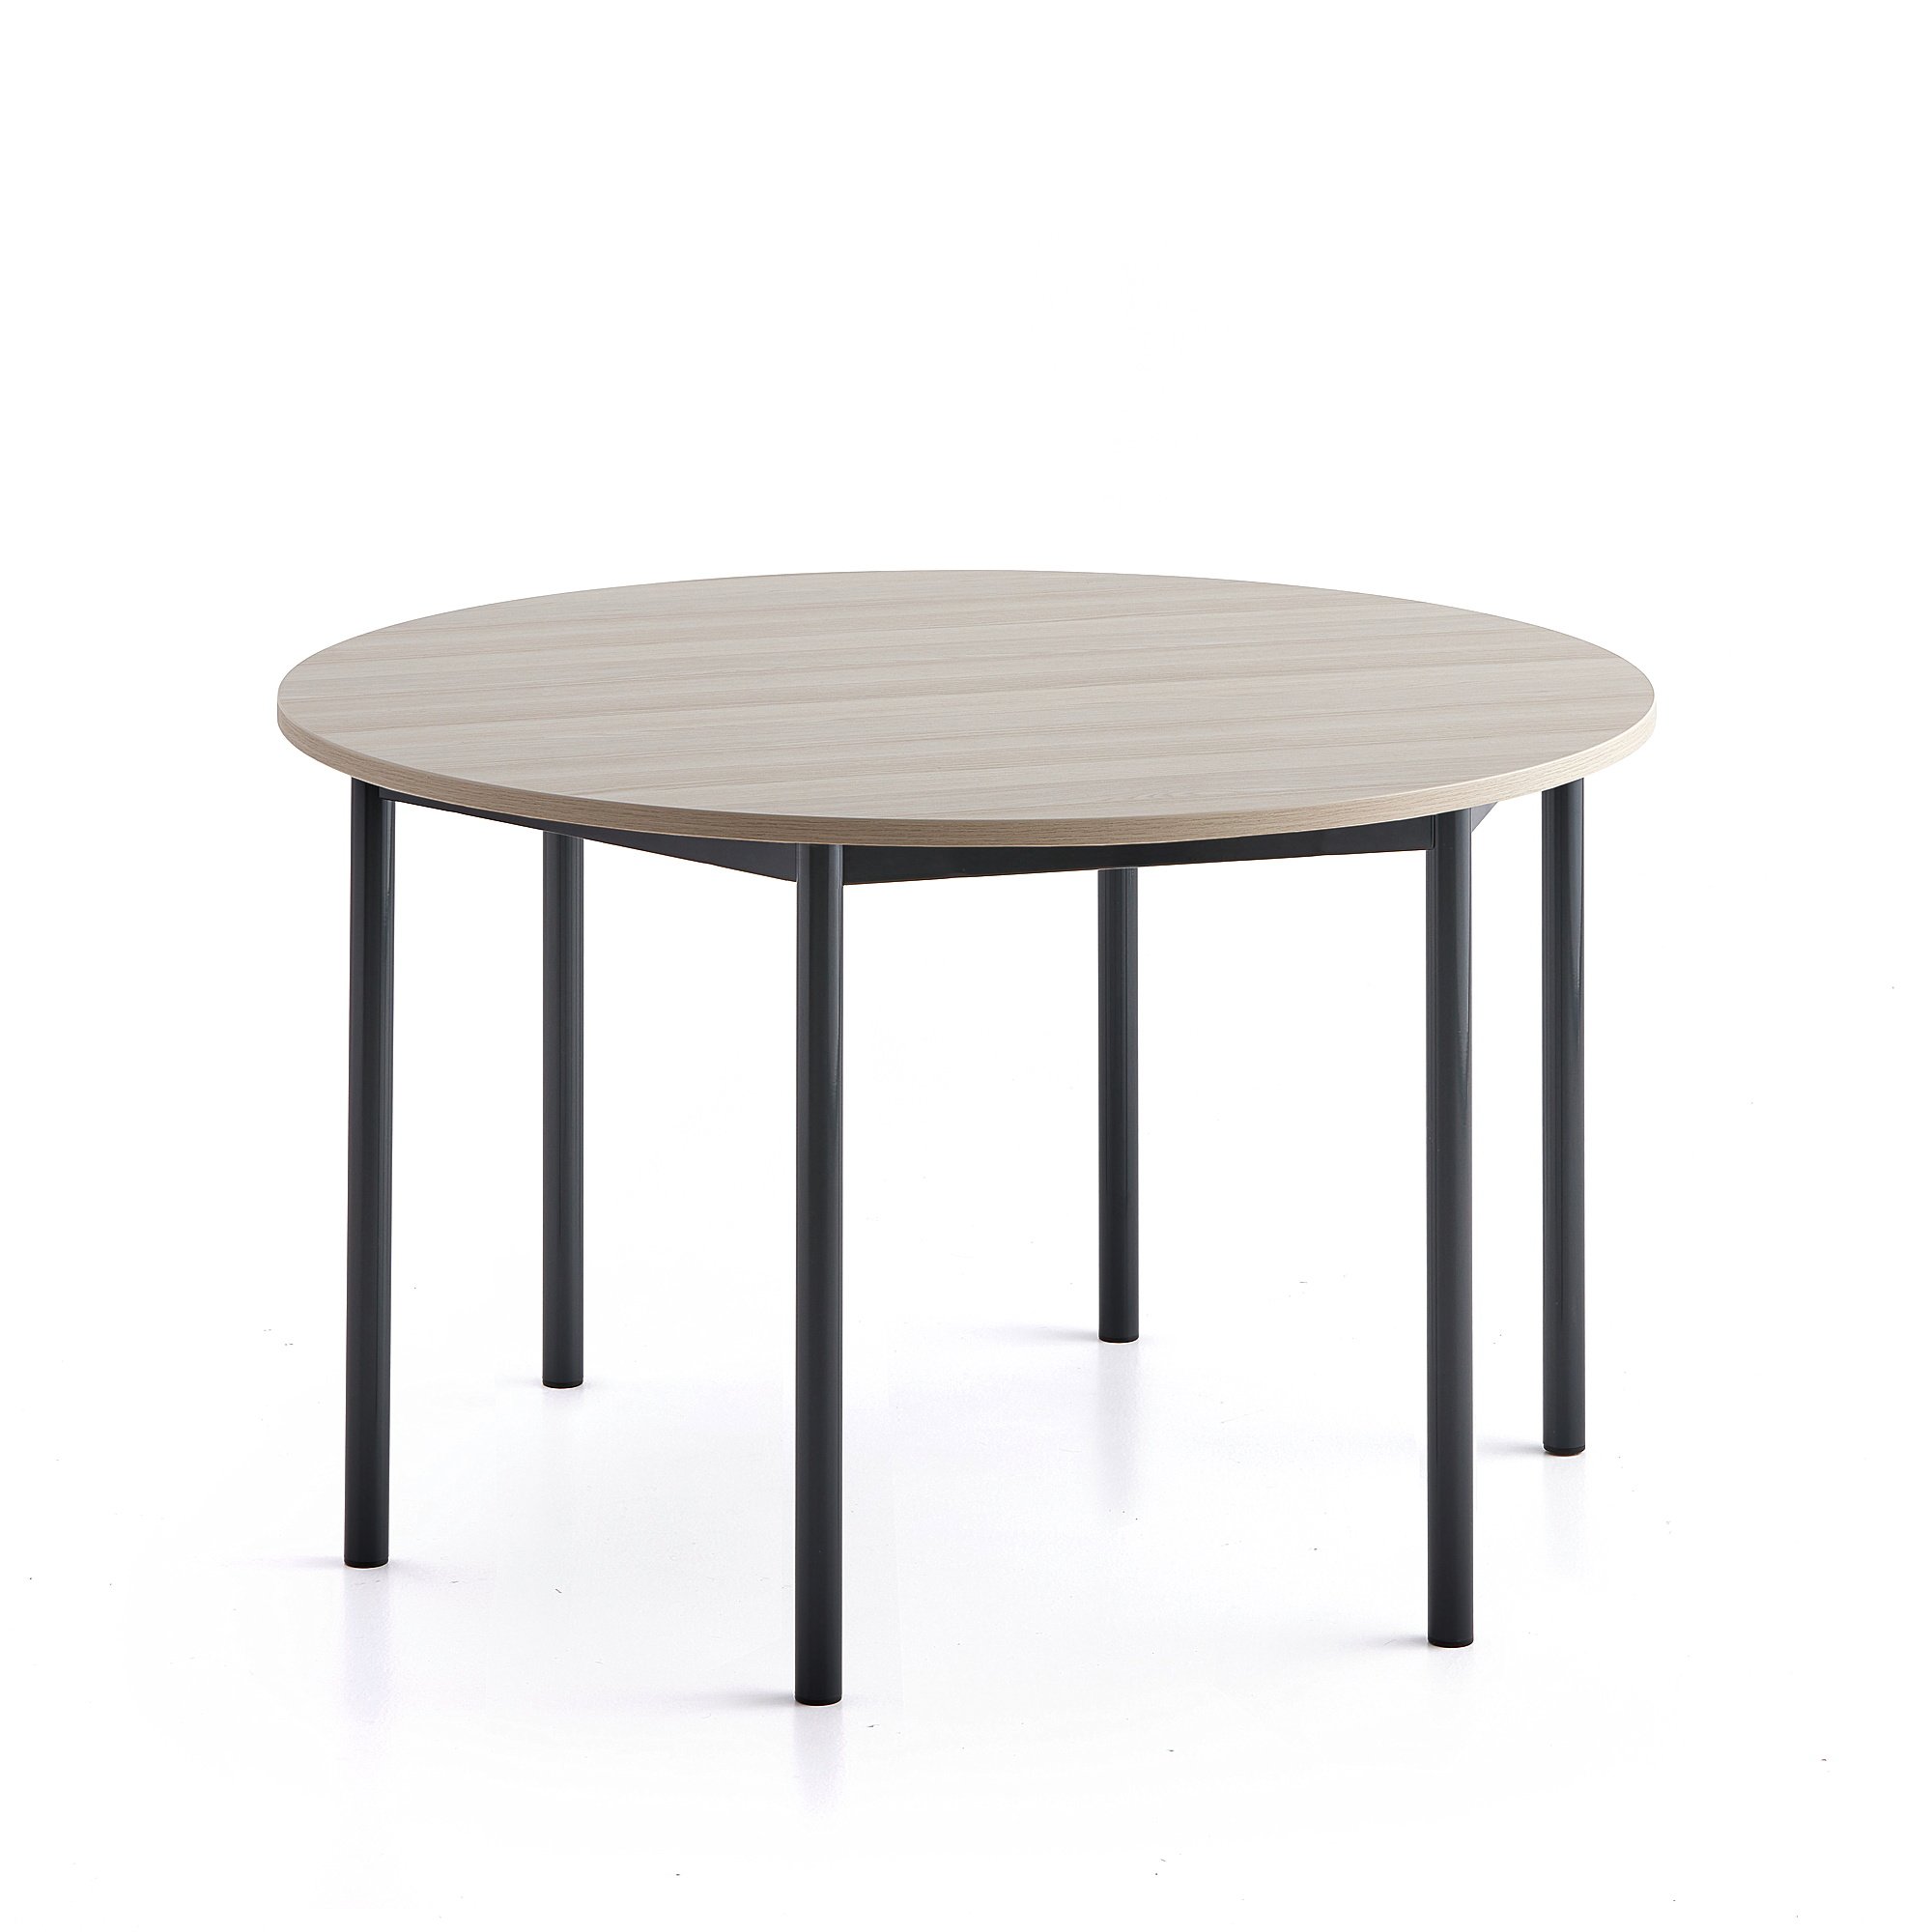 Stůl SONITUS PLUS, Ø1200x720 mm, antracitově šedé nohy, HPL deska tlumící hluk, jasan